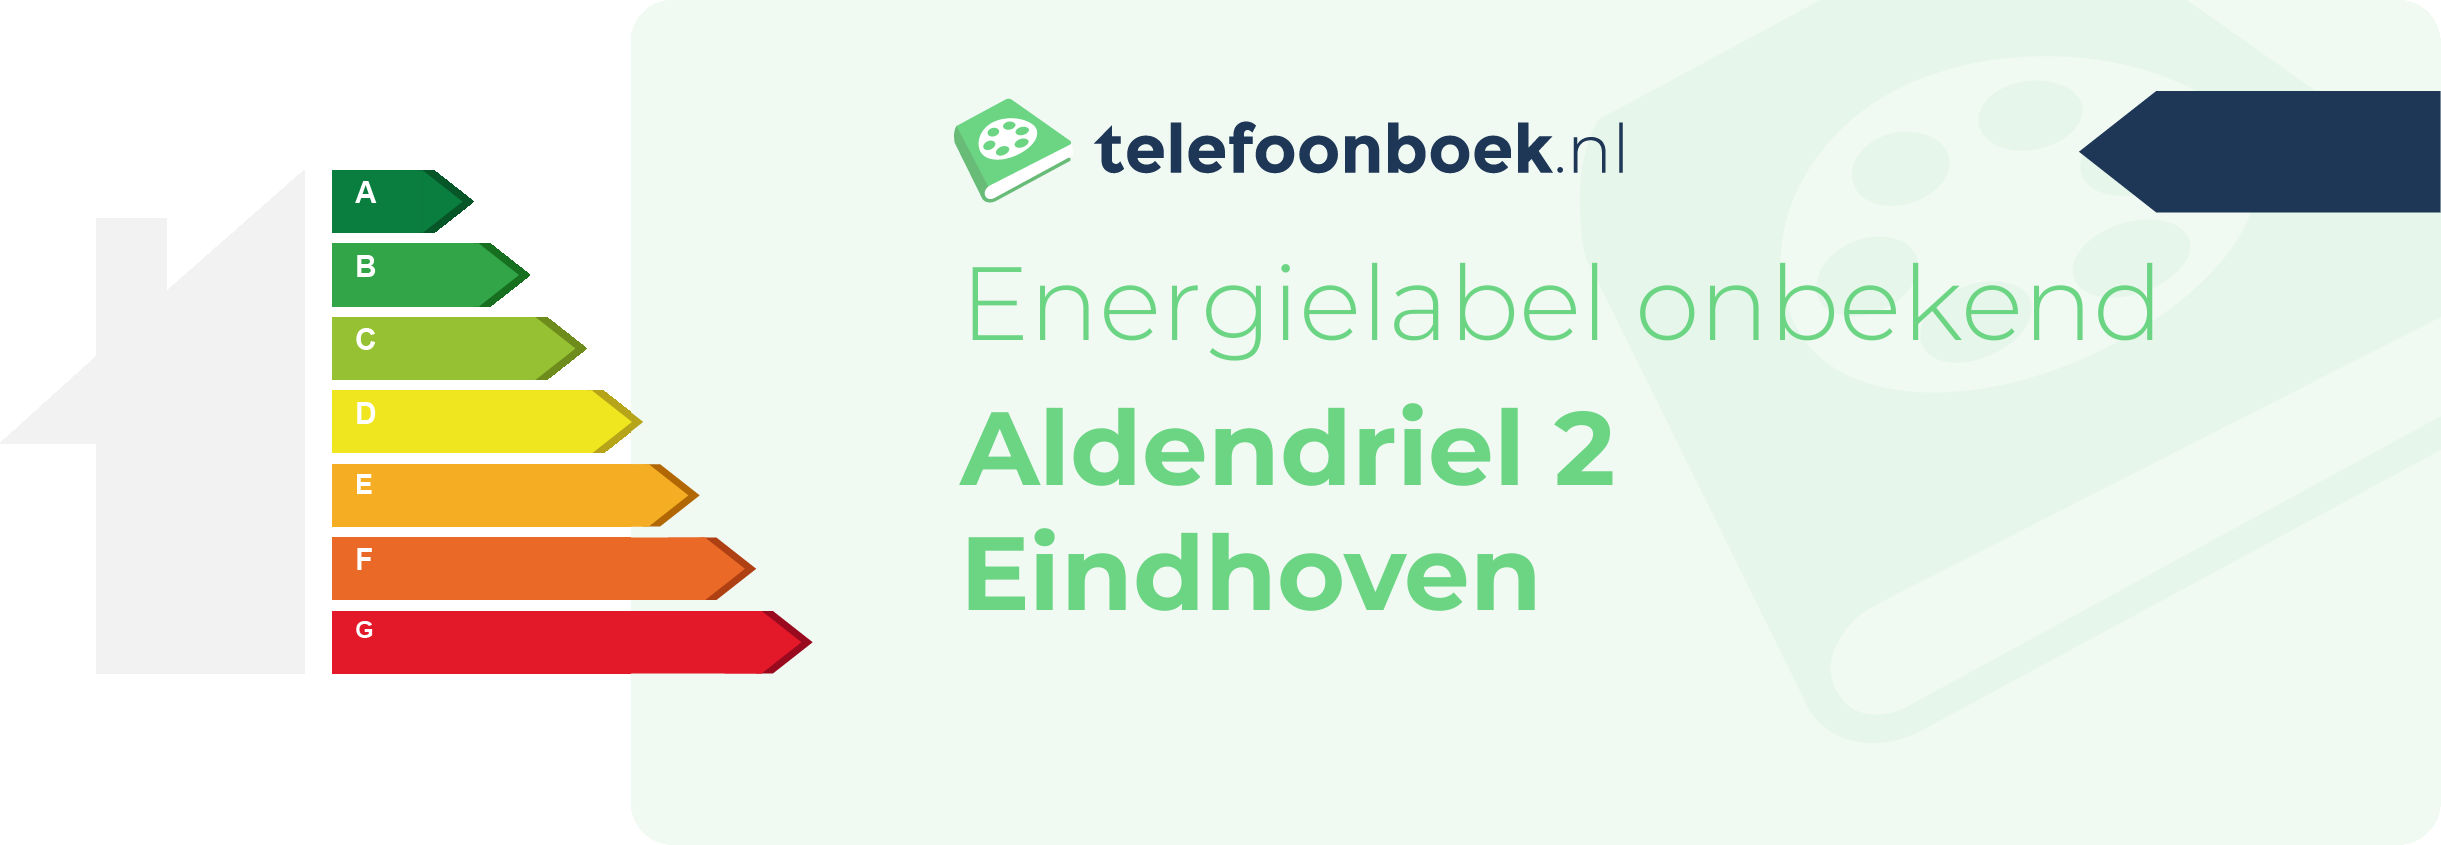 Energielabel Aldendriel 2 Eindhoven